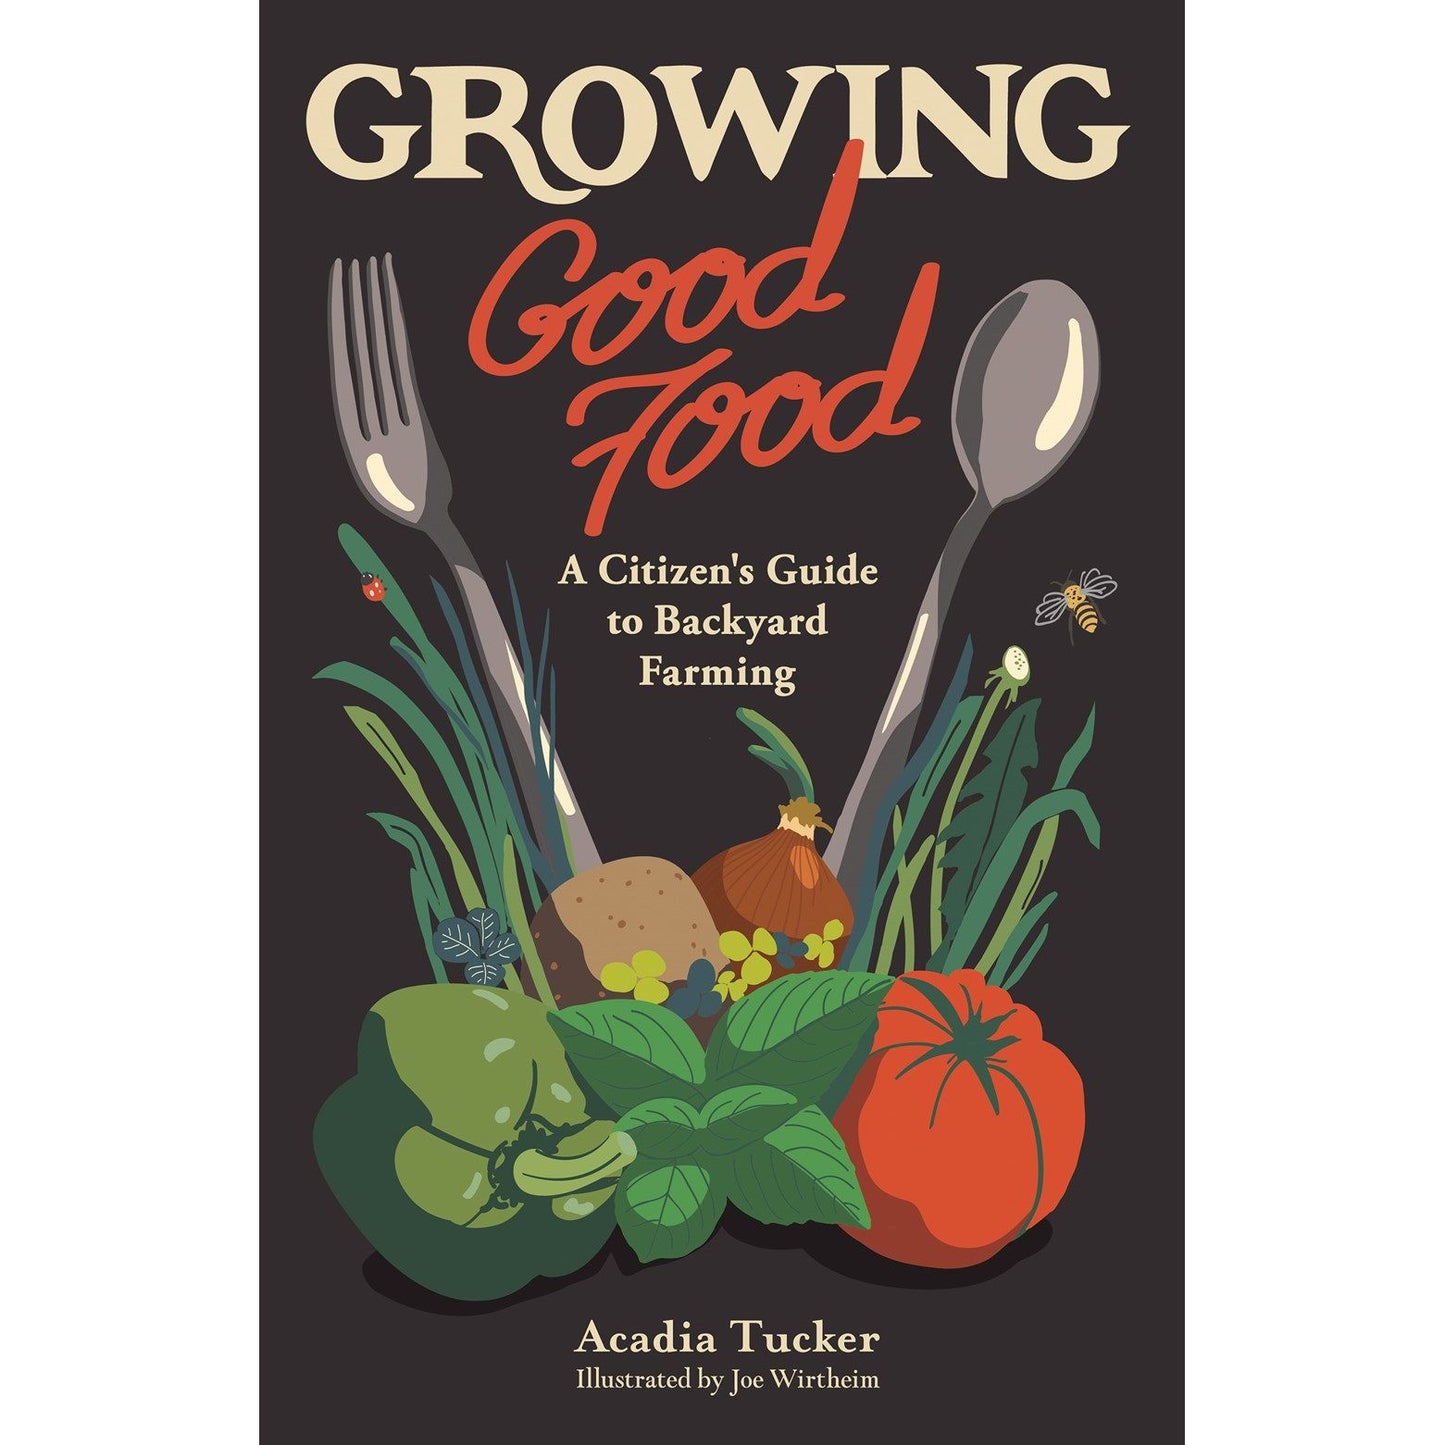 Growing Good Food (Acadia Tucker)